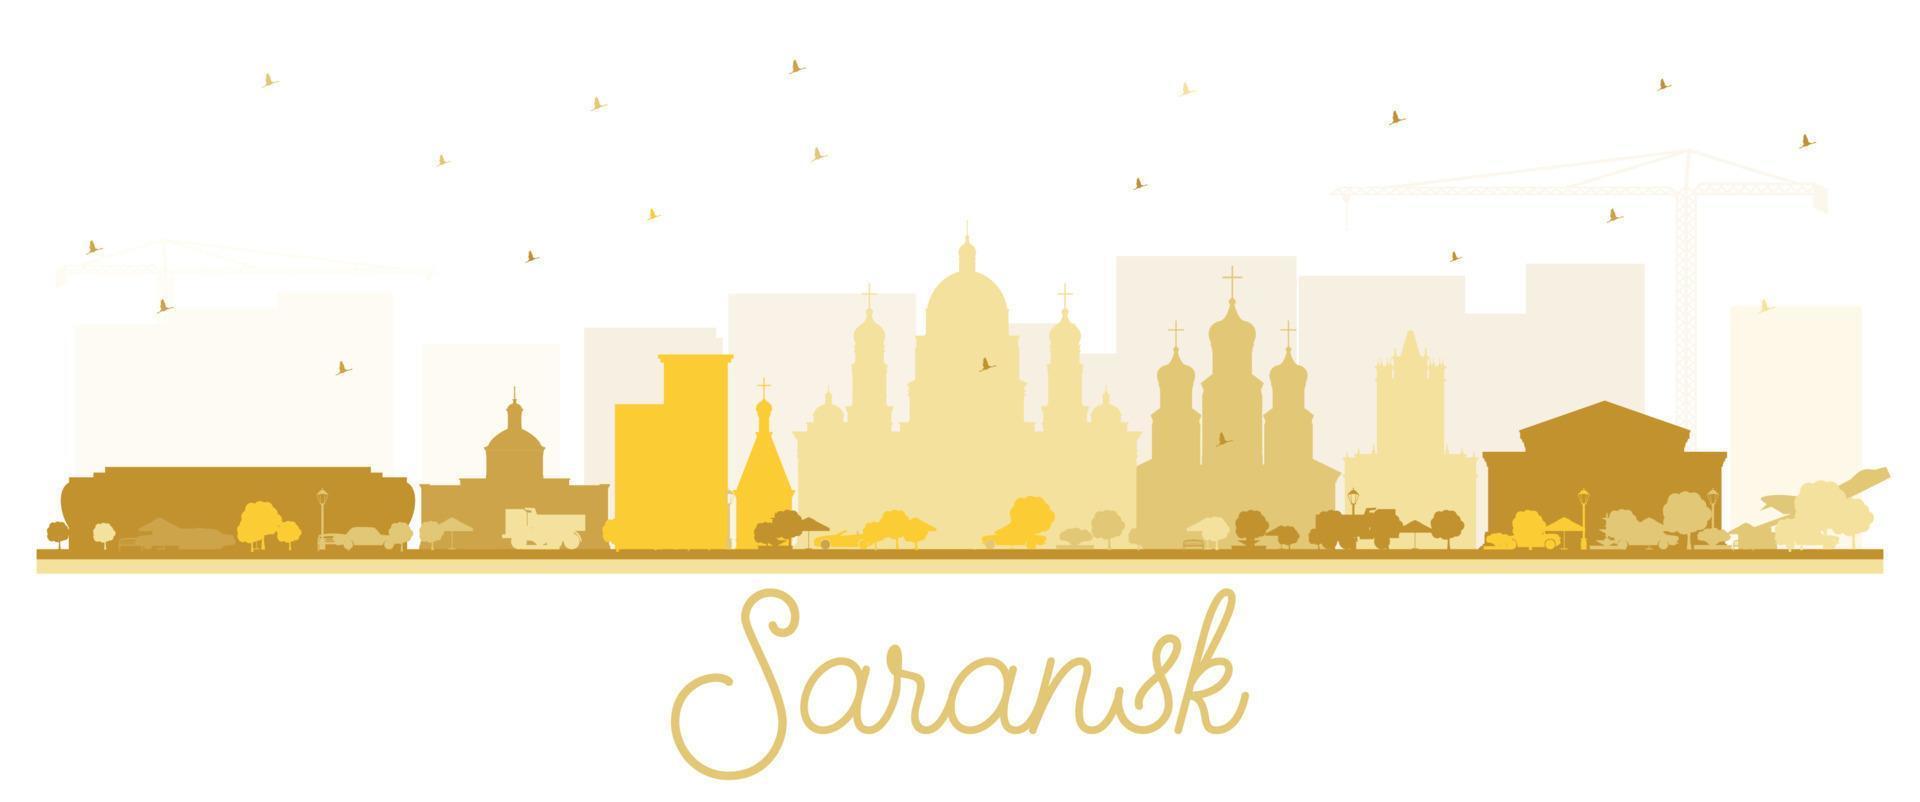 silueta del horizonte de la ciudad de saransk rusia con edificios dorados aislados en blanco. vector